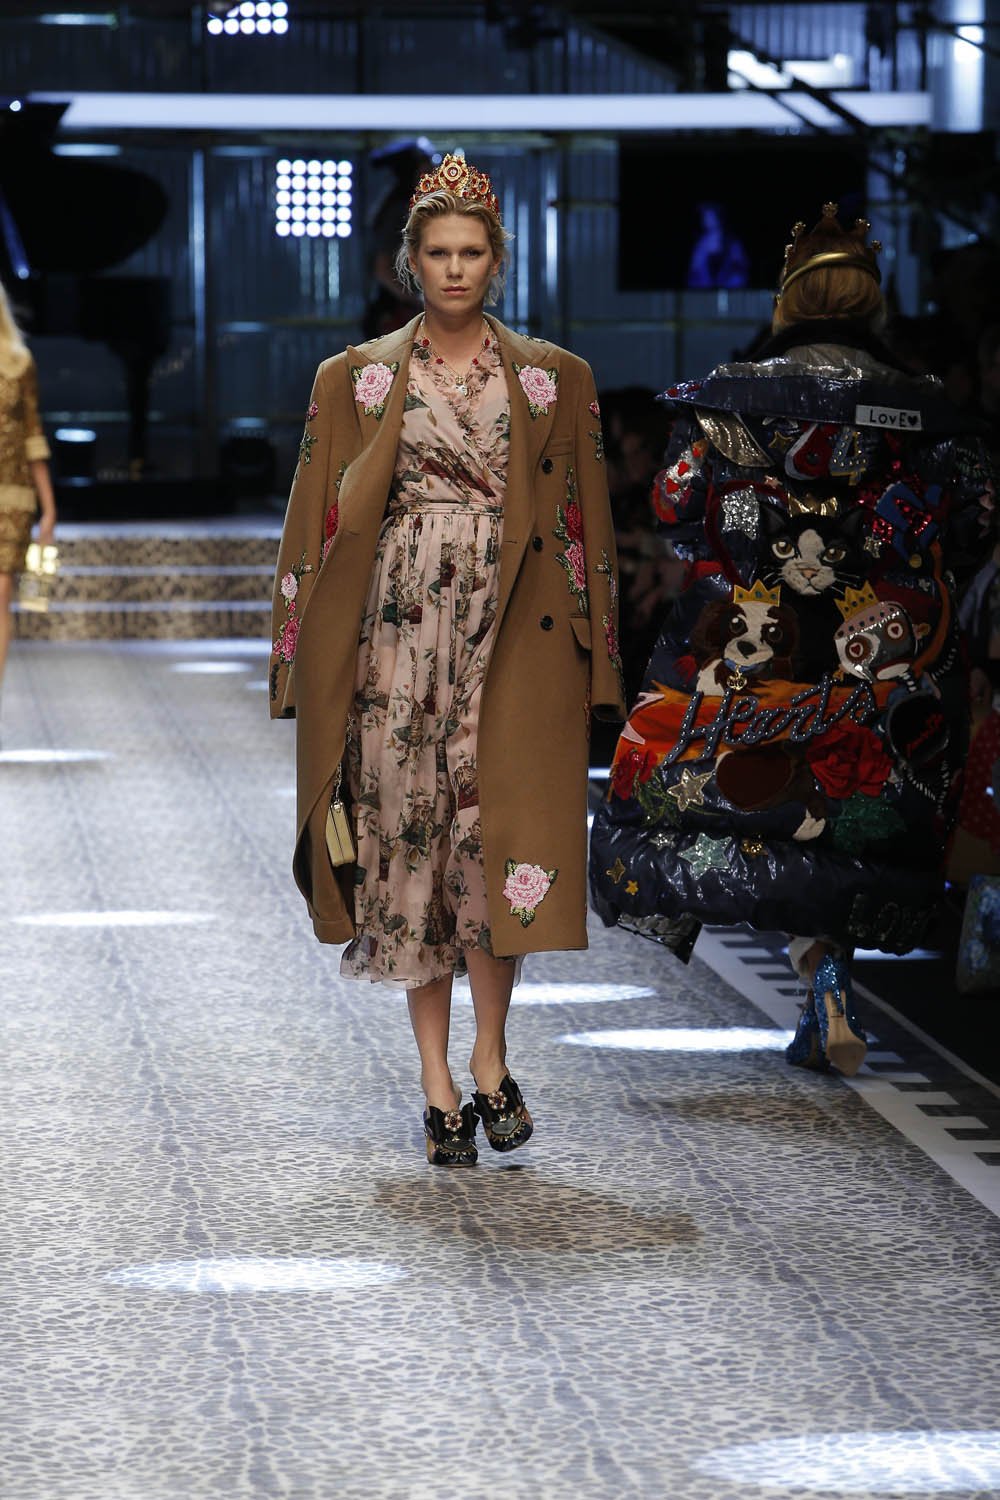 Dolce&Gabbana_women's fashion show fw17-18_Runway_images (46)